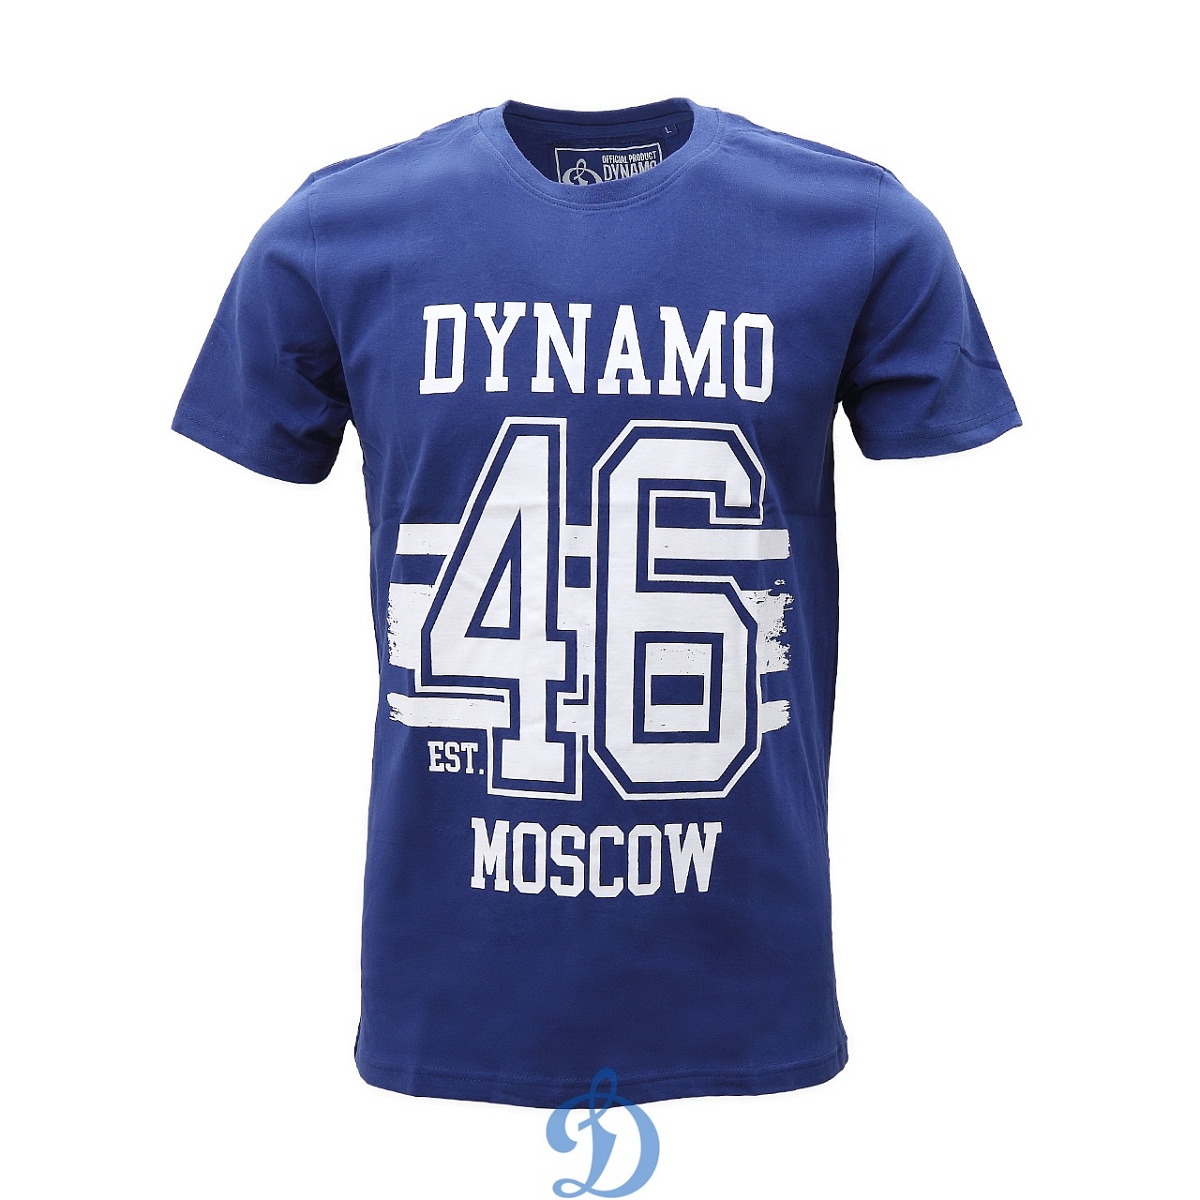 Футболка  «Dynamo est.46»